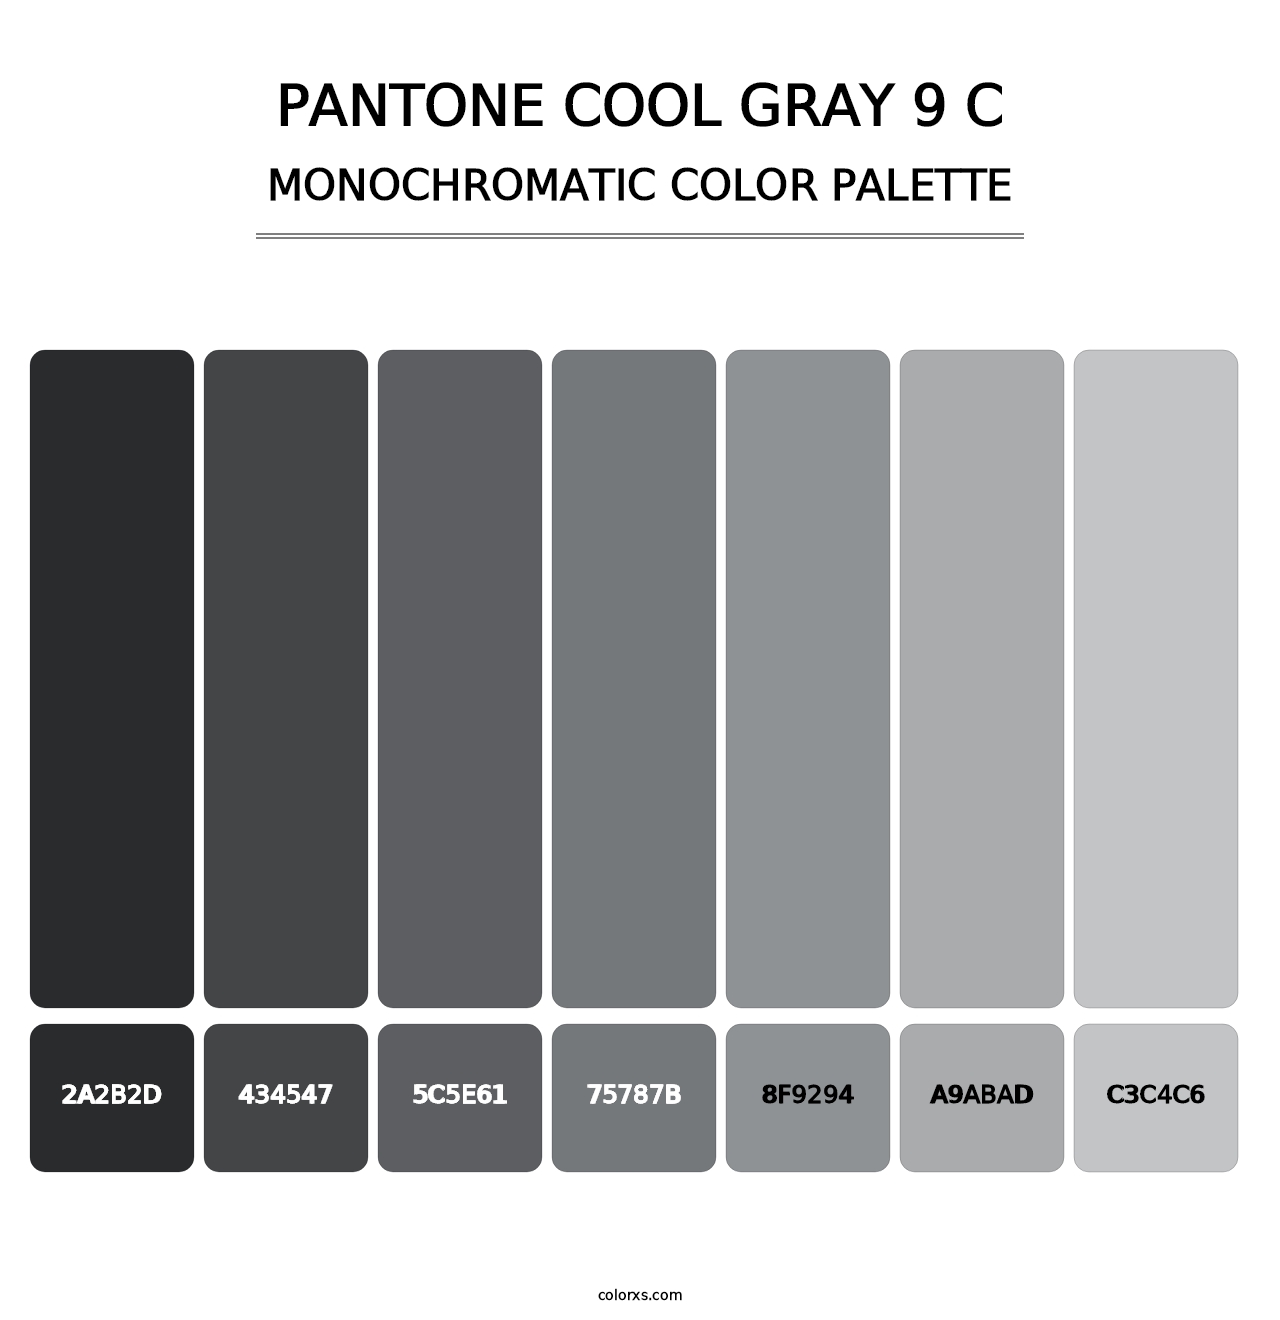 PANTONE Cool Gray 9 C - Monochromatic Color Palette